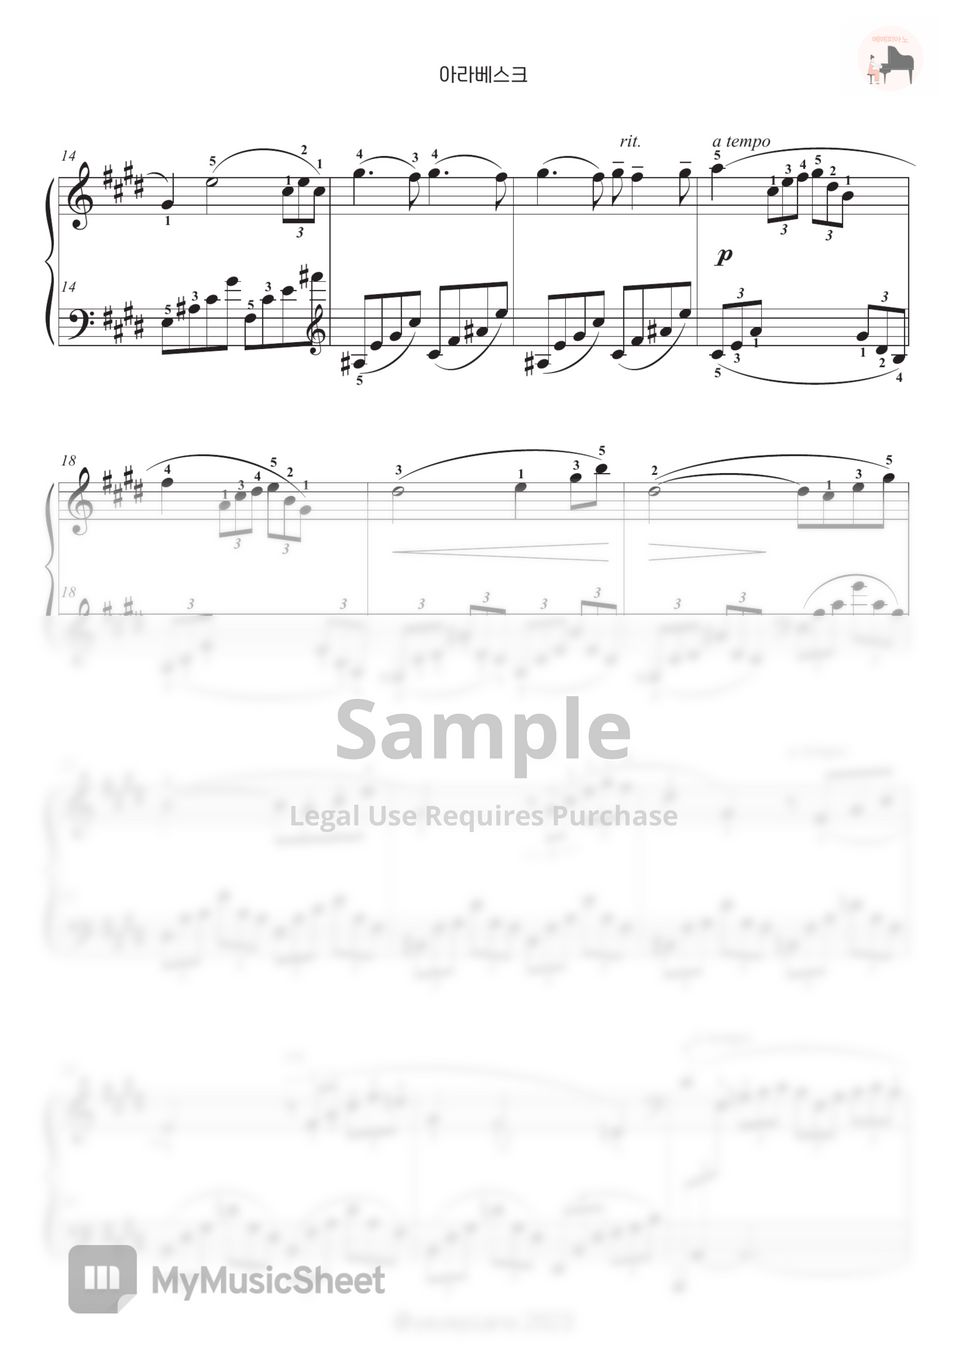 C. Debussy (드뷔시) - Arabesque No.1 (아라베스크) (Easy ver.) by YEYE PIANO